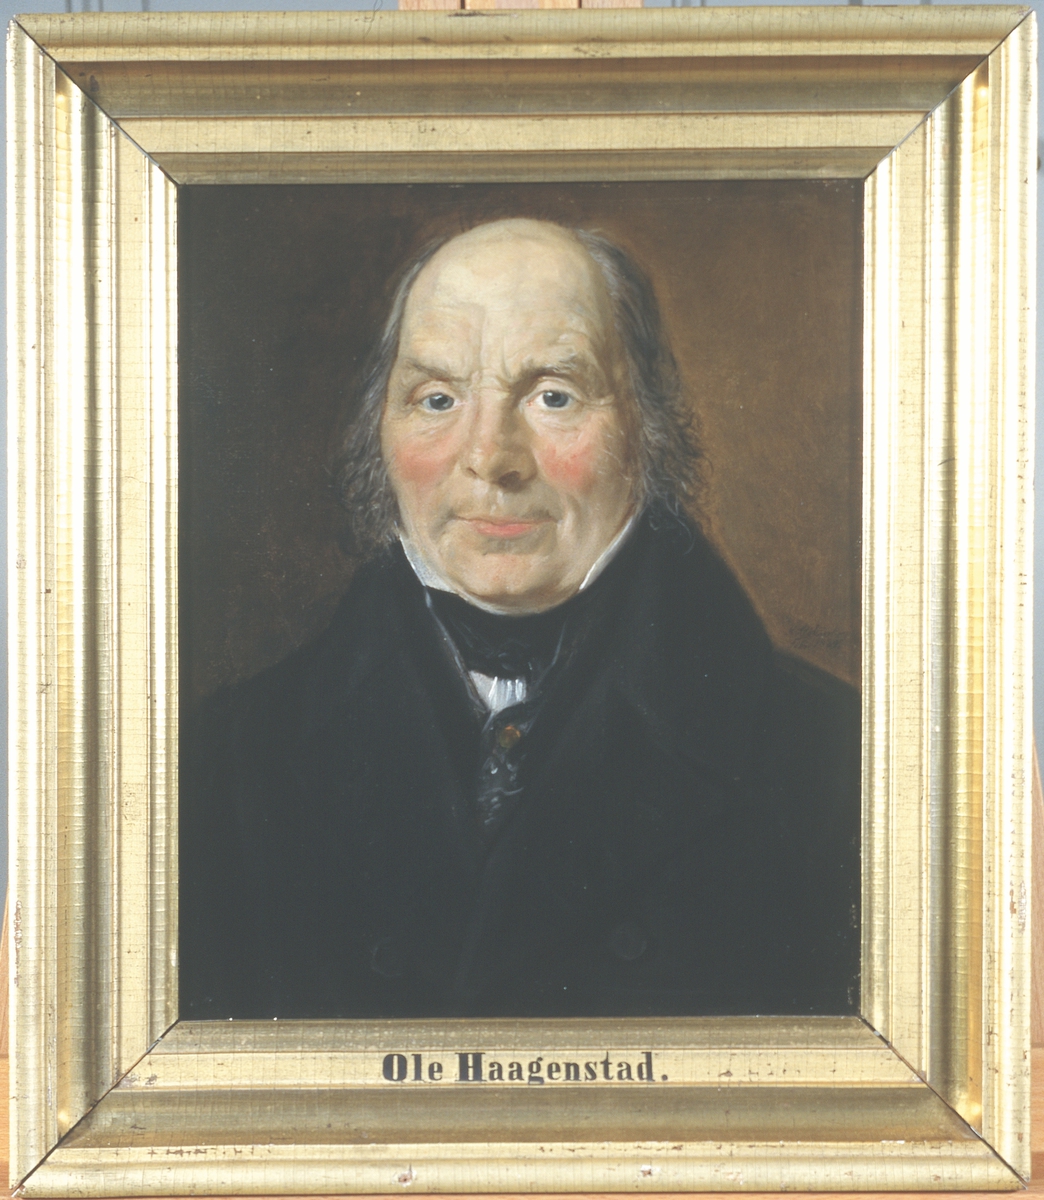 Portrett av Ole Haagenstad. Mørk drakt. Rødbrun bakgrunn.